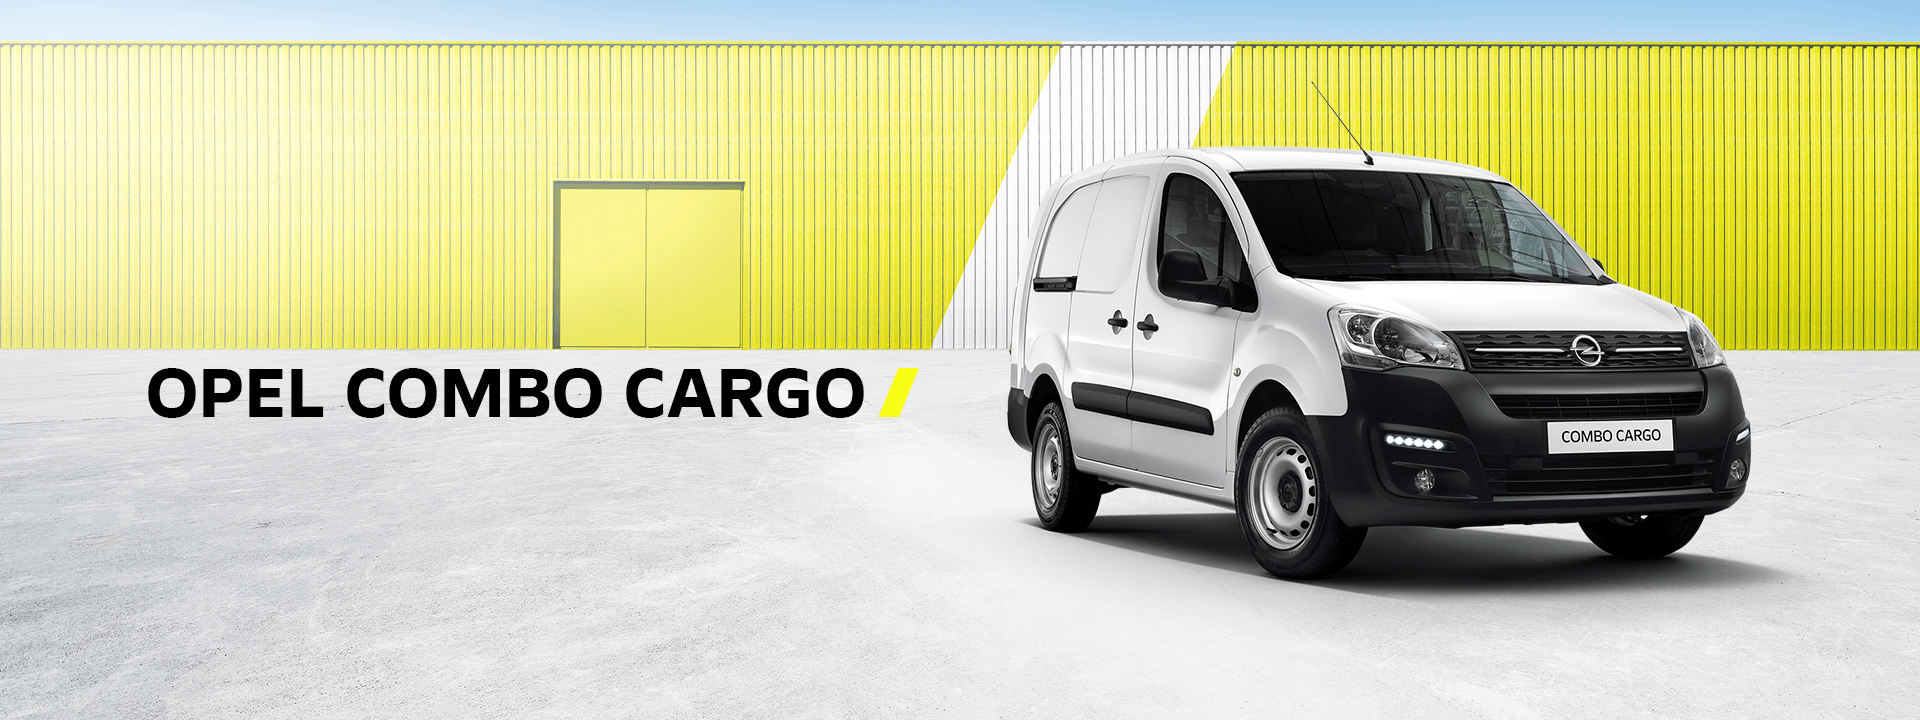 Новый автомобиль Opel Combo Cargo